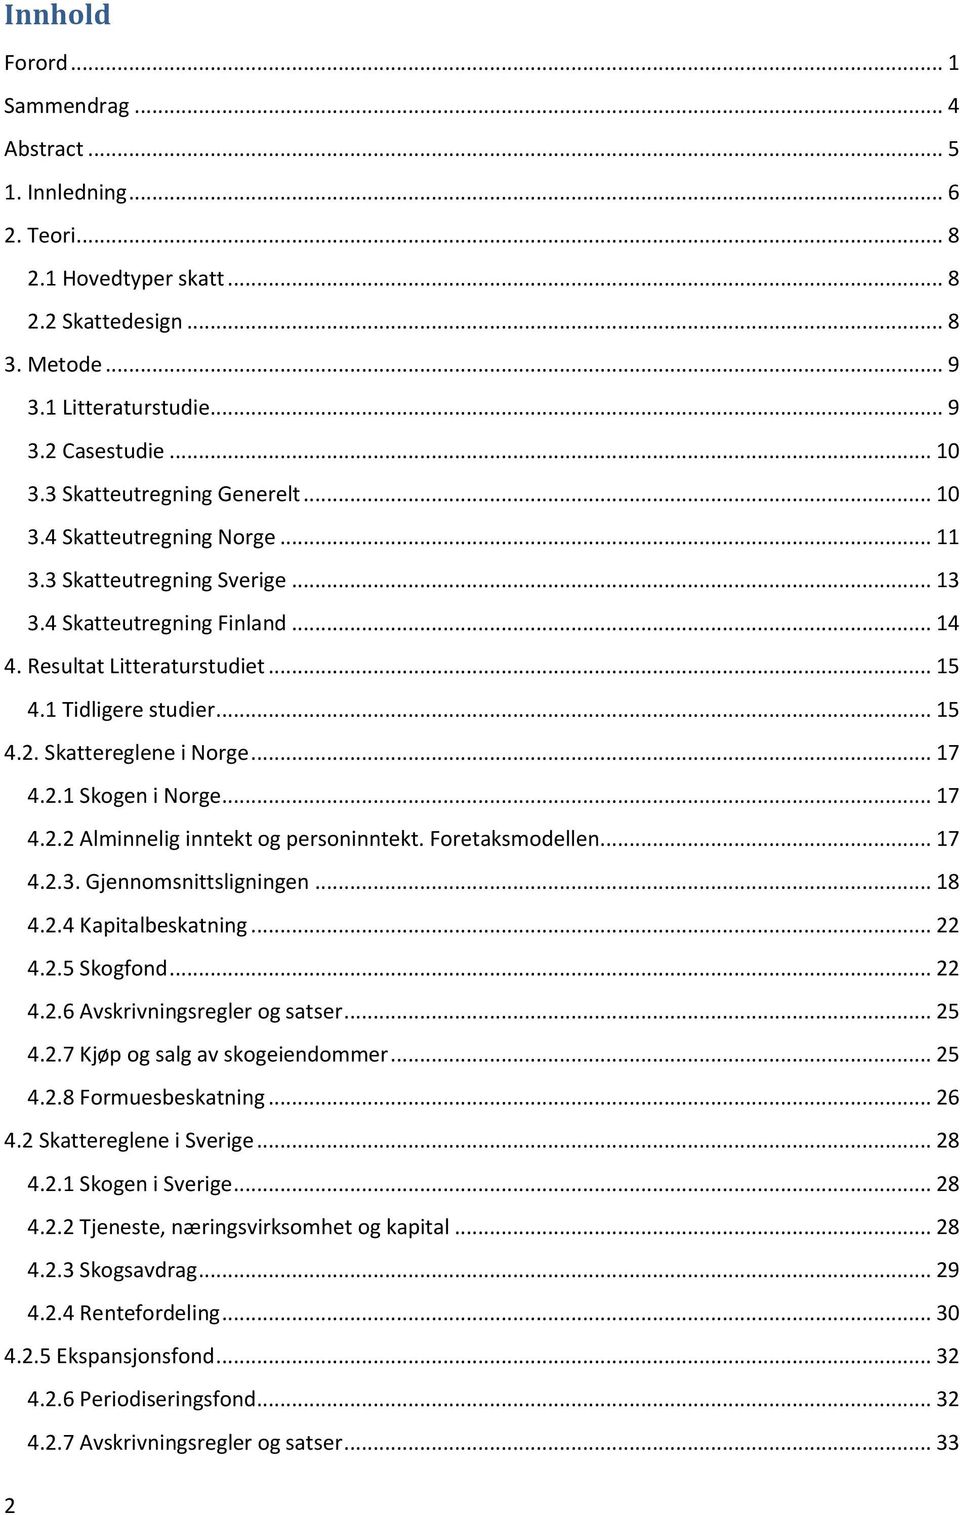 Skattereglene i Norge... 17 4.2.1 Skogen i Norge... 17 4.2.2 Alminnelig inntekt og personinntekt. Foretaksmodellen... 17 4.2.3. Gjennomsnittsligningen... 18 4.2.4 Kapitalbeskatning... 22 4.2.5 Skogfond.